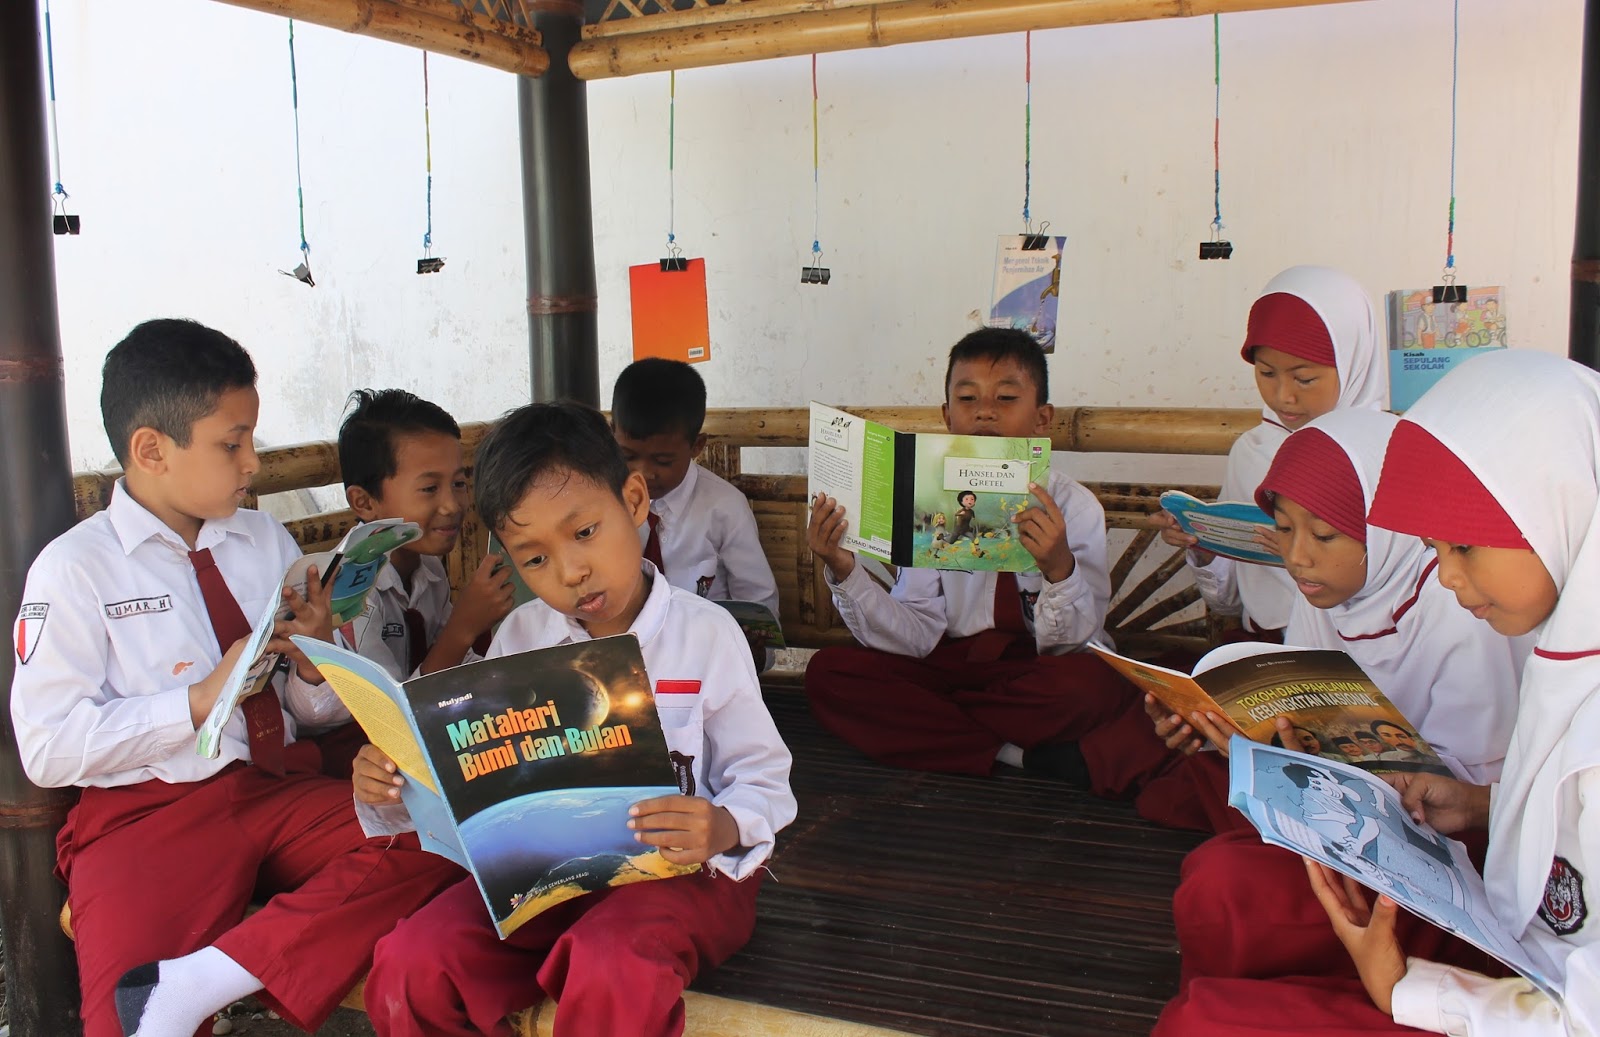 Budaya membaca sebelum masuk kelas sudah mulai digalakkan di berbagai sekolah. Hal tersebut bertujuan untuk meningkatkan minat baca siswa dan menambah wawasan | Sumber hipwee